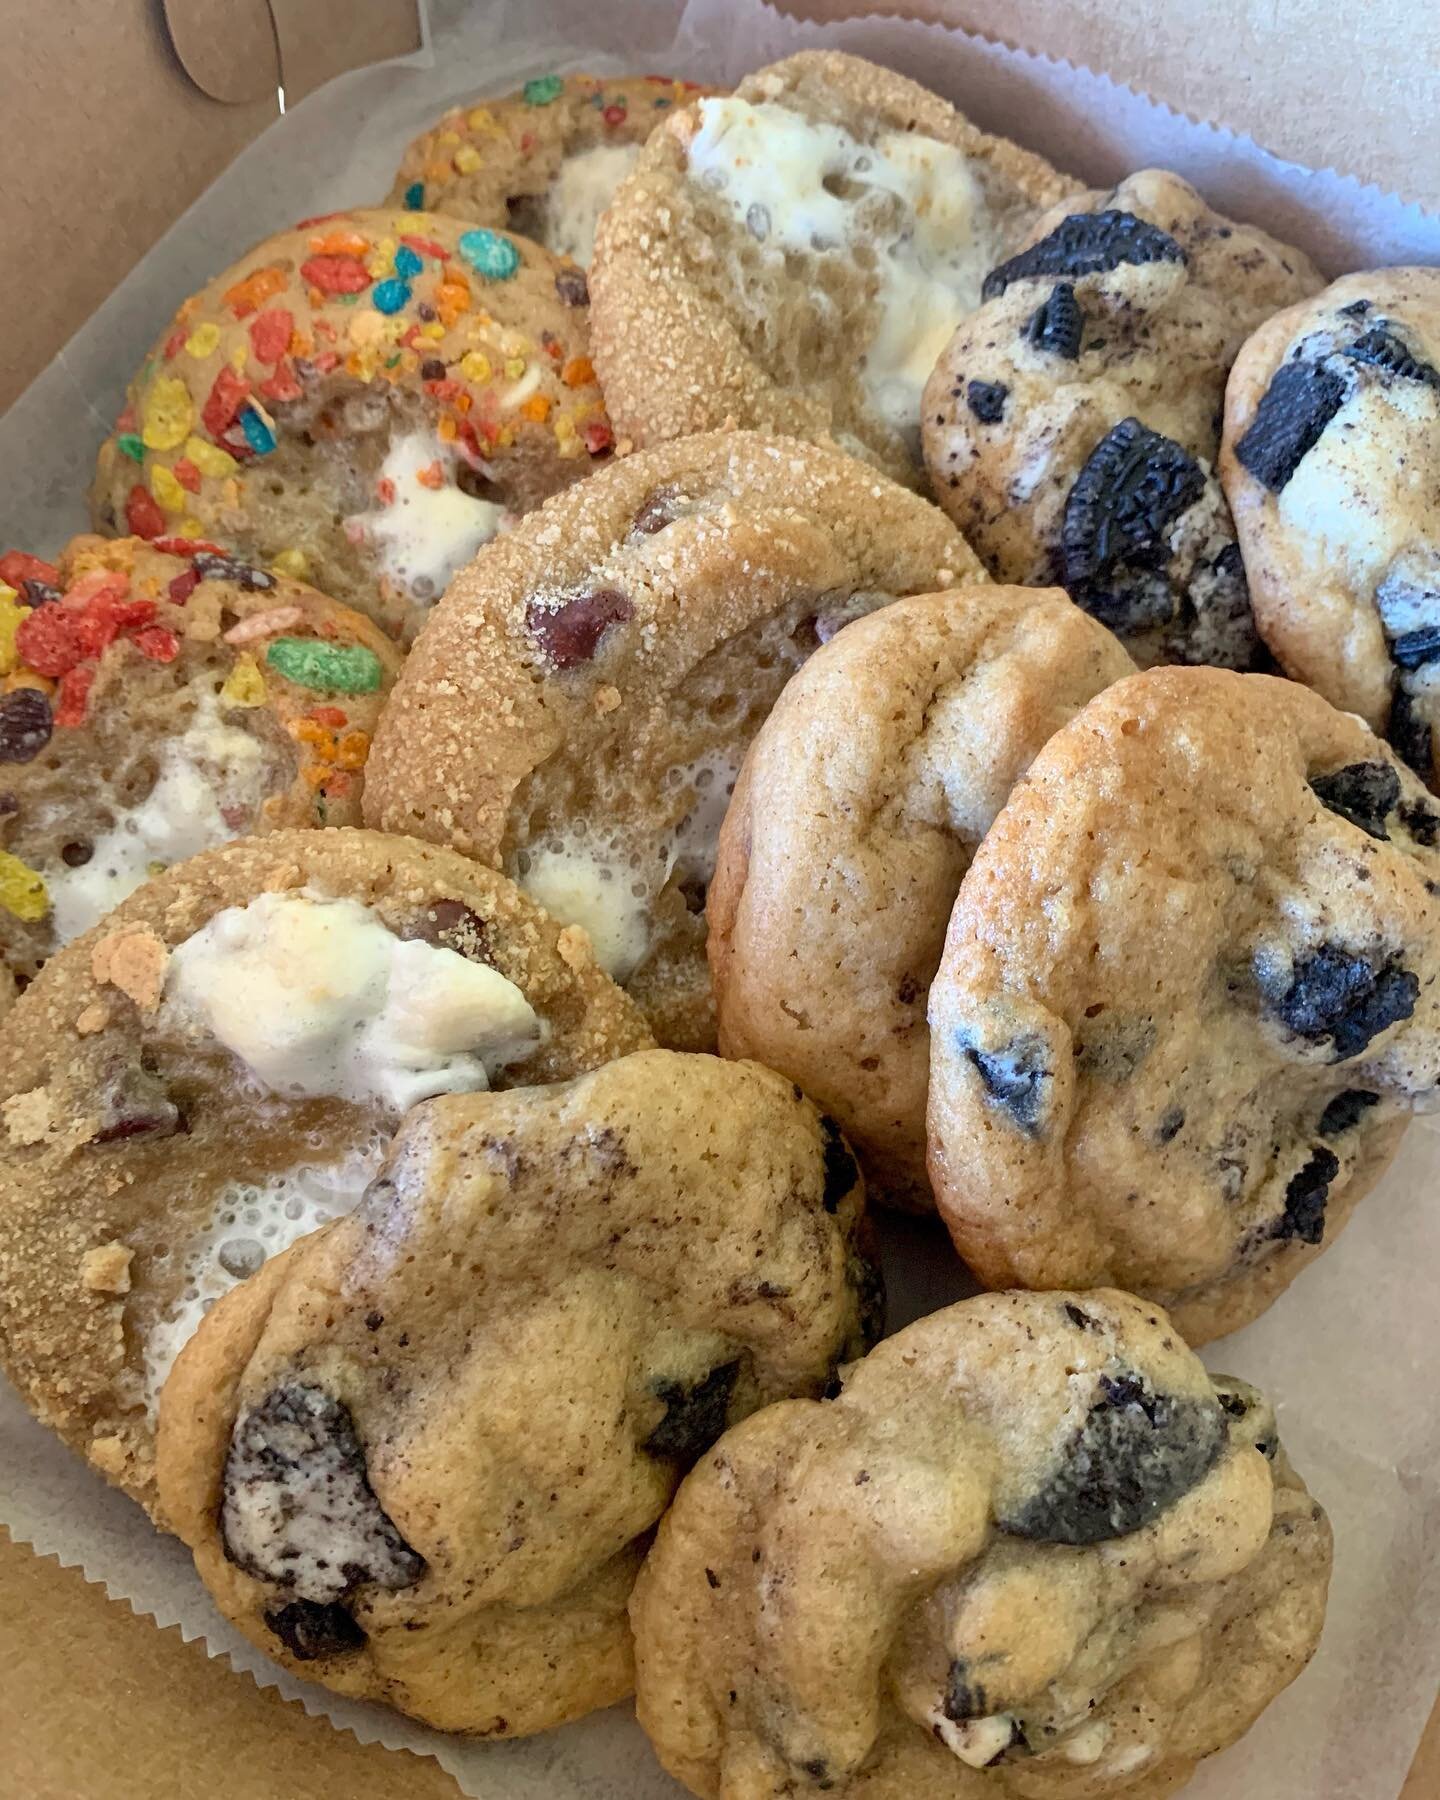 just some cookie orders 😻😻 look at themmmm 

#cookies #cookiesofinstagram #homebakery #blueprint #cookiesandcream #oreos #nabisco #fruitypebbles #smores